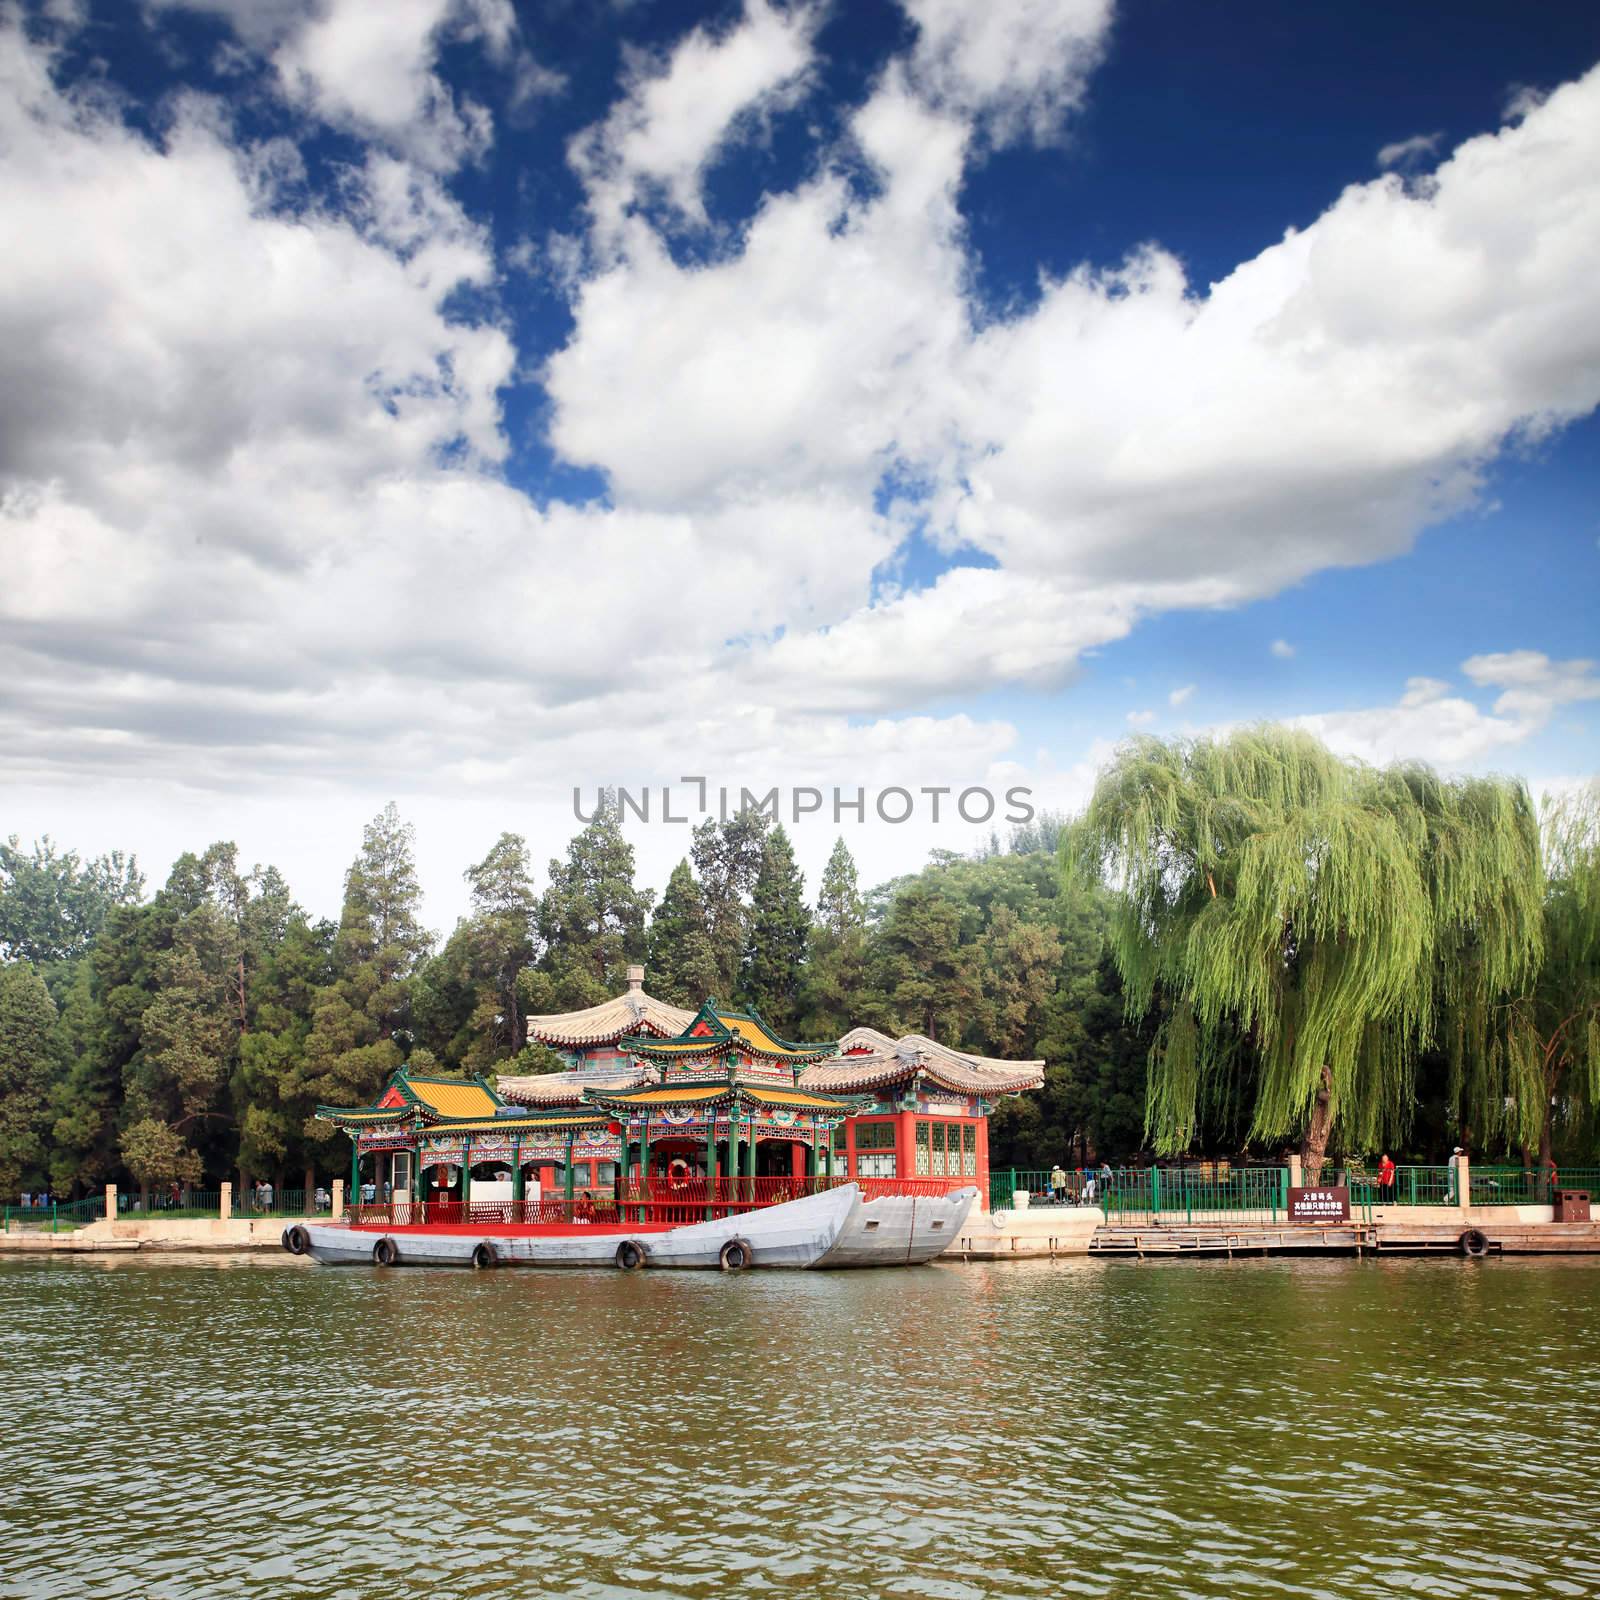 The Beihai Park near Forbidden City Beijing  by gary718